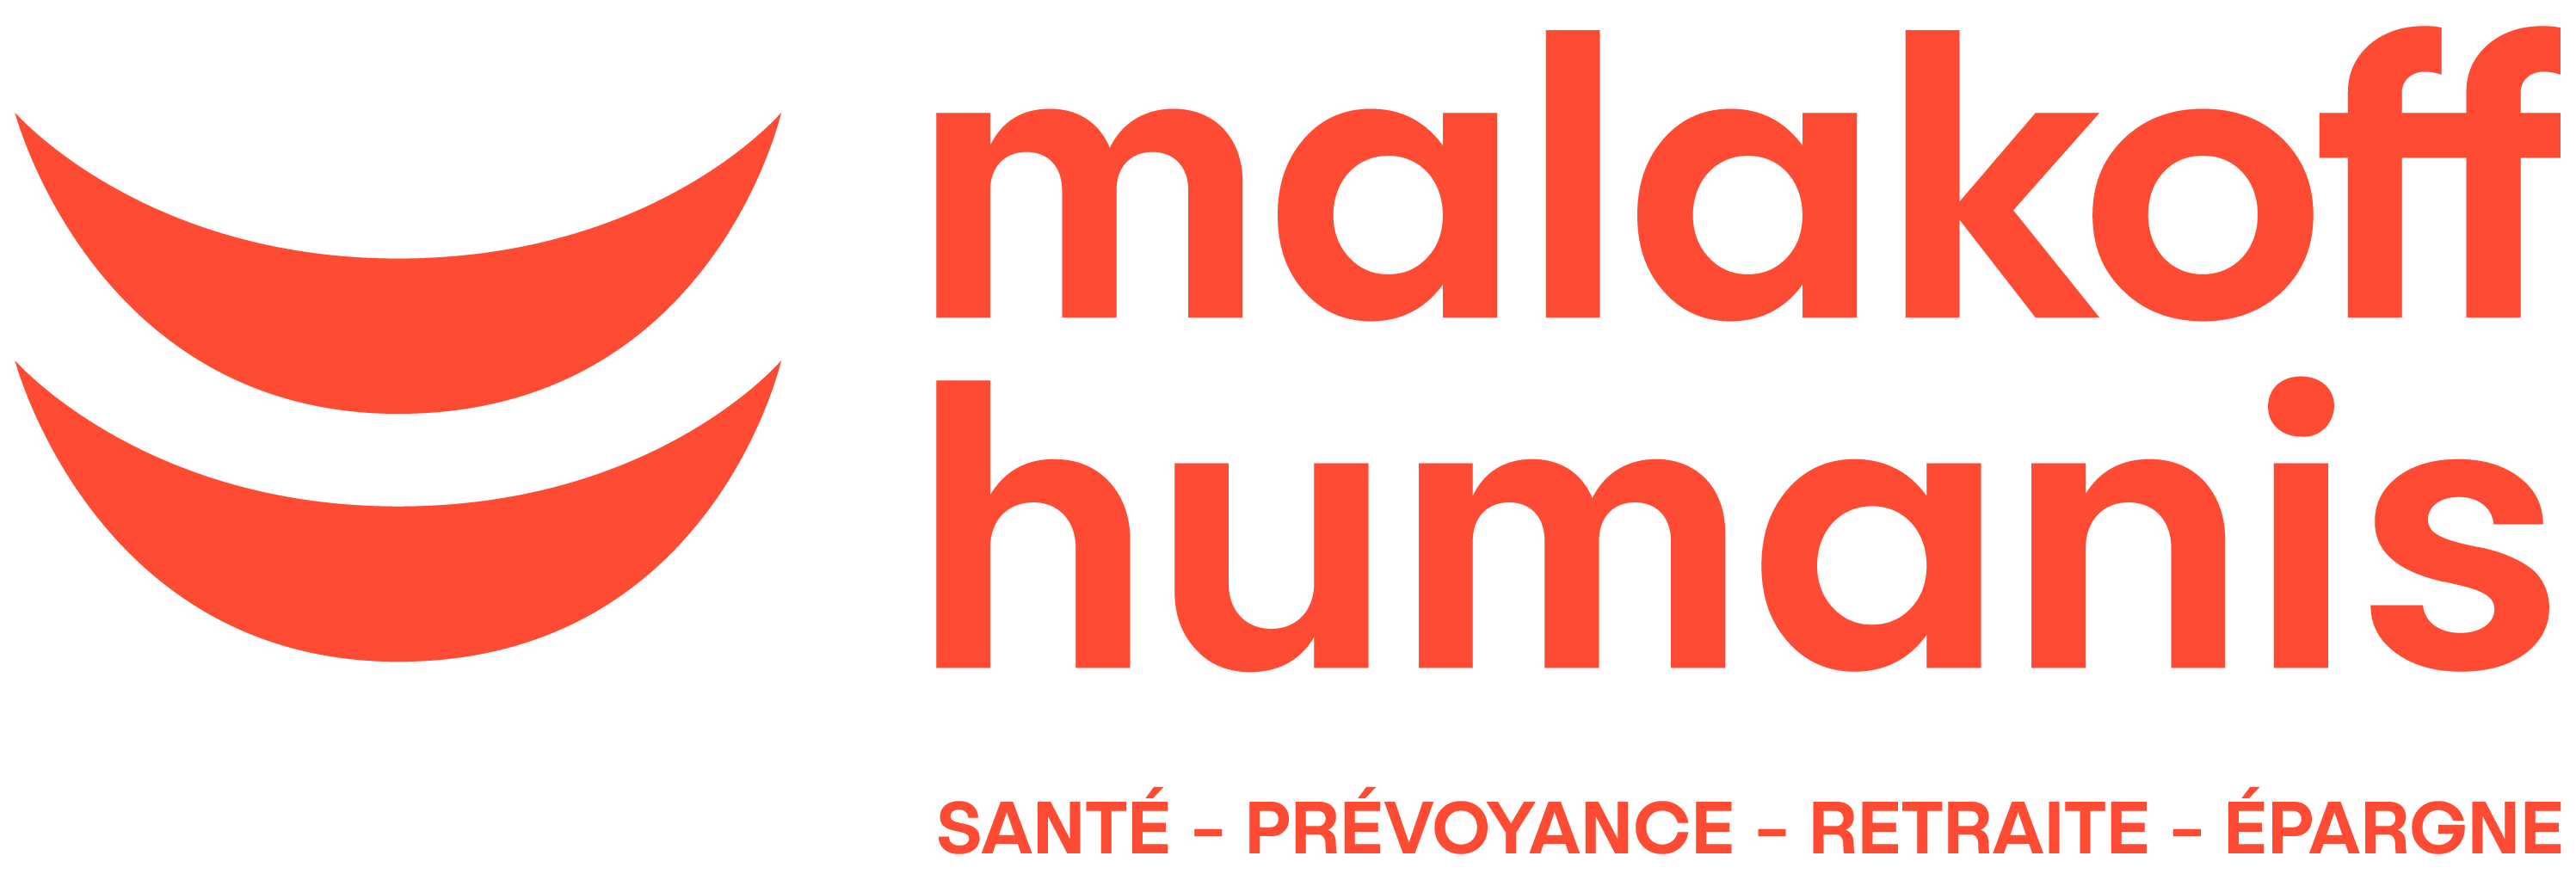 malakoff humanis santé-prévoyance-retraite-épargne